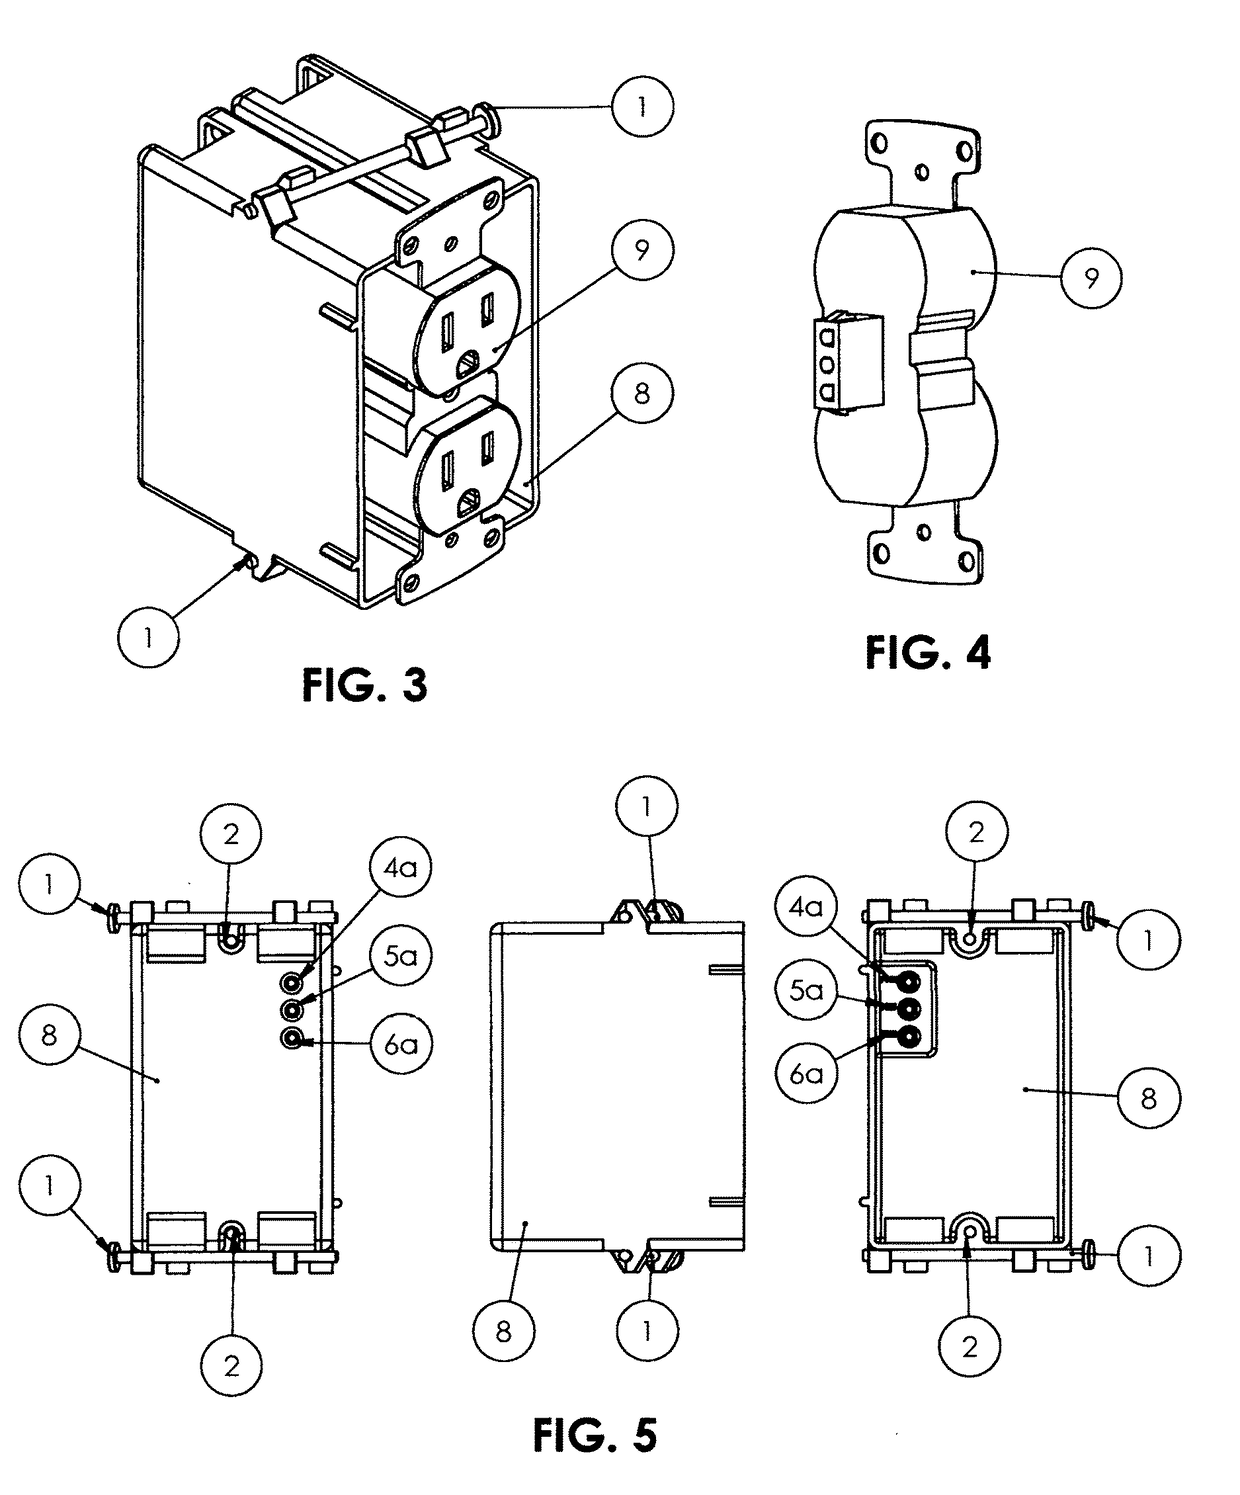 Electrical box, electrical switch & electrical plug-in mechanism